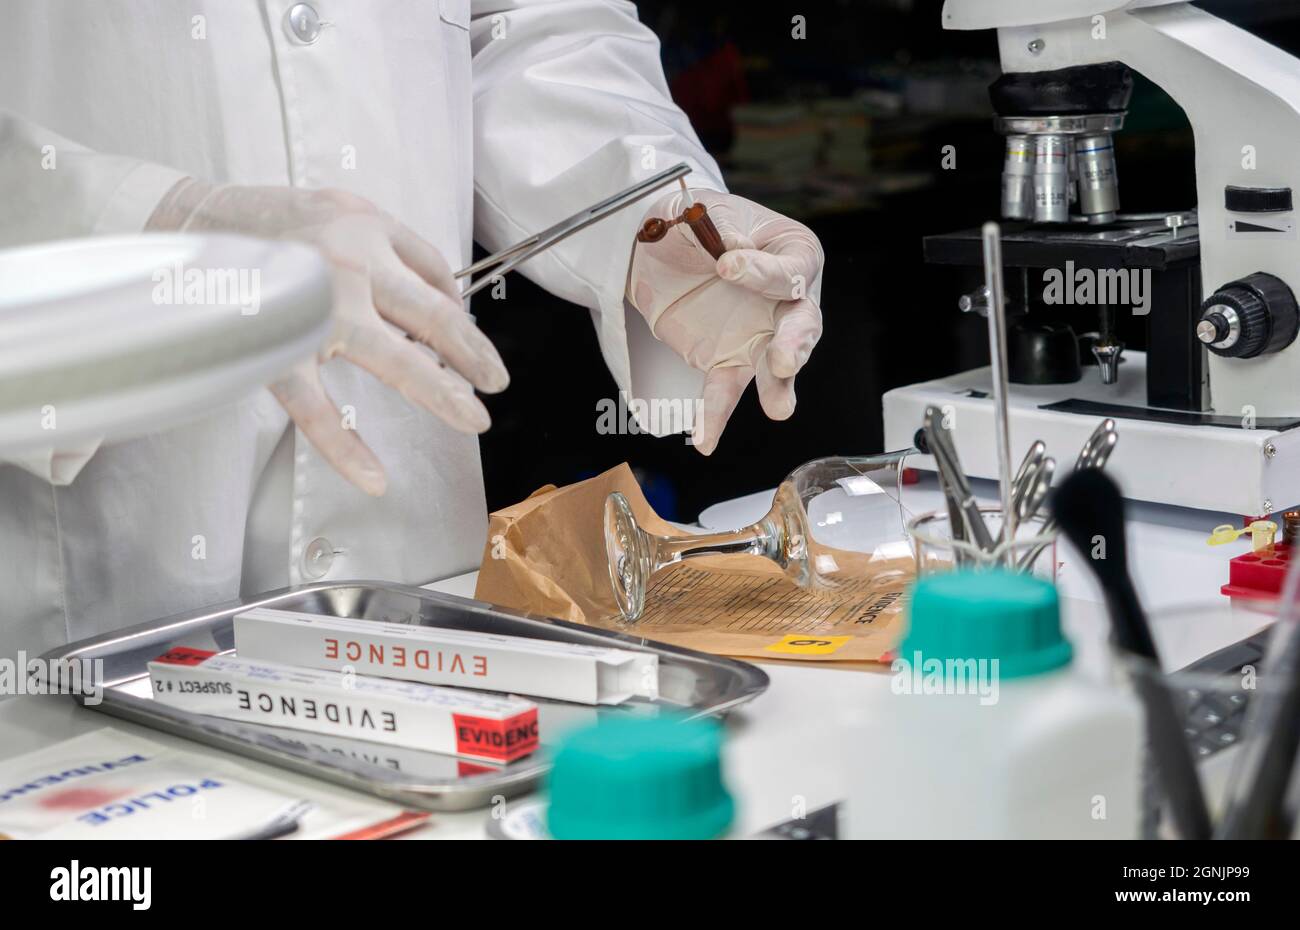 Un expert de la police obtient un échantillon de sang d'une coupe de verre cassée dans Criminalistic Lab, image conceptuelle Banque D'Images